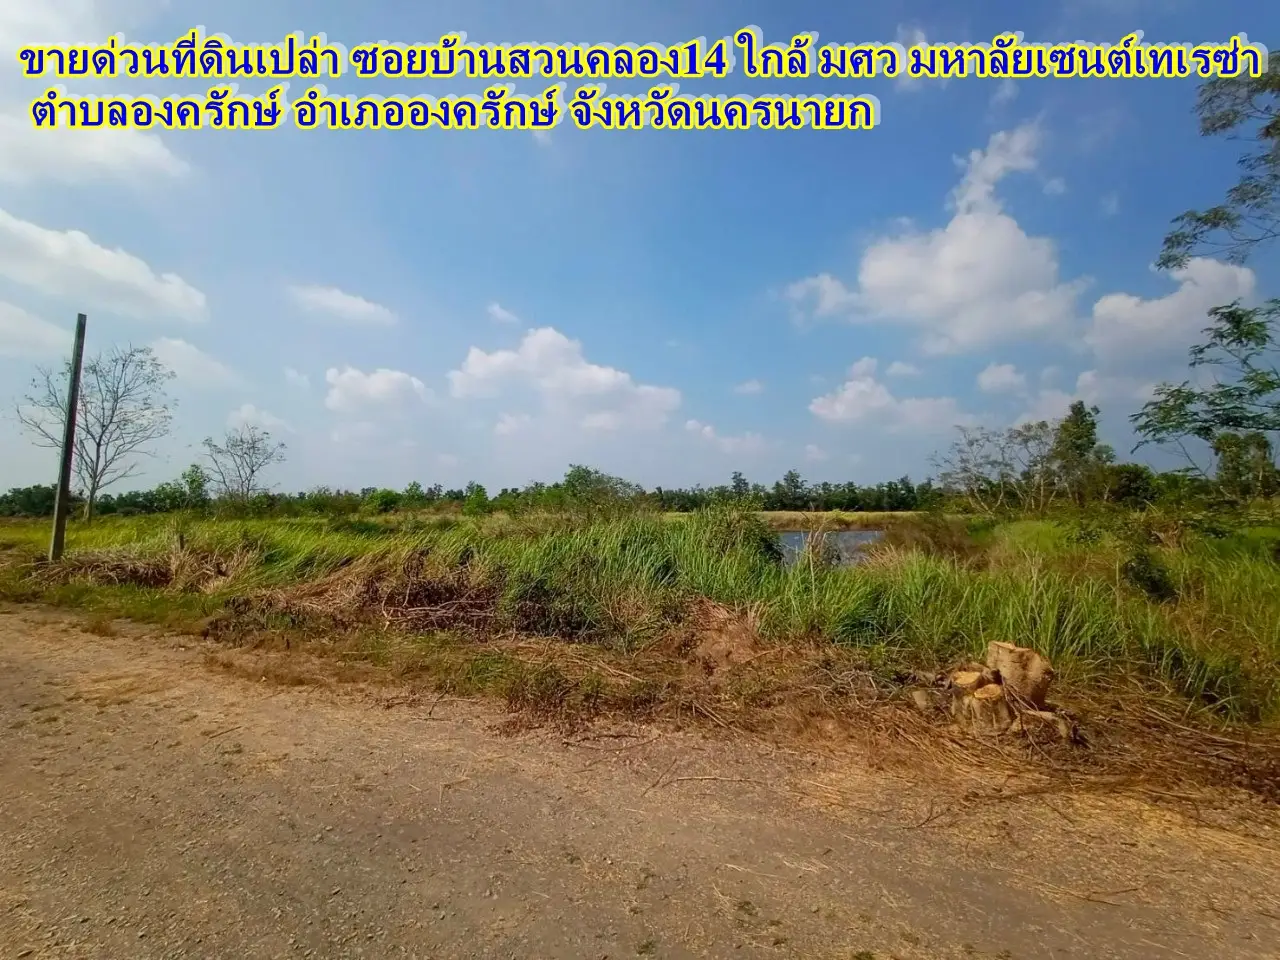 土地急售。Soi Ban Suan Khlong 14, near Srinakharinwirot University, St. Theresa Ongkharak Nakhon Nayok University